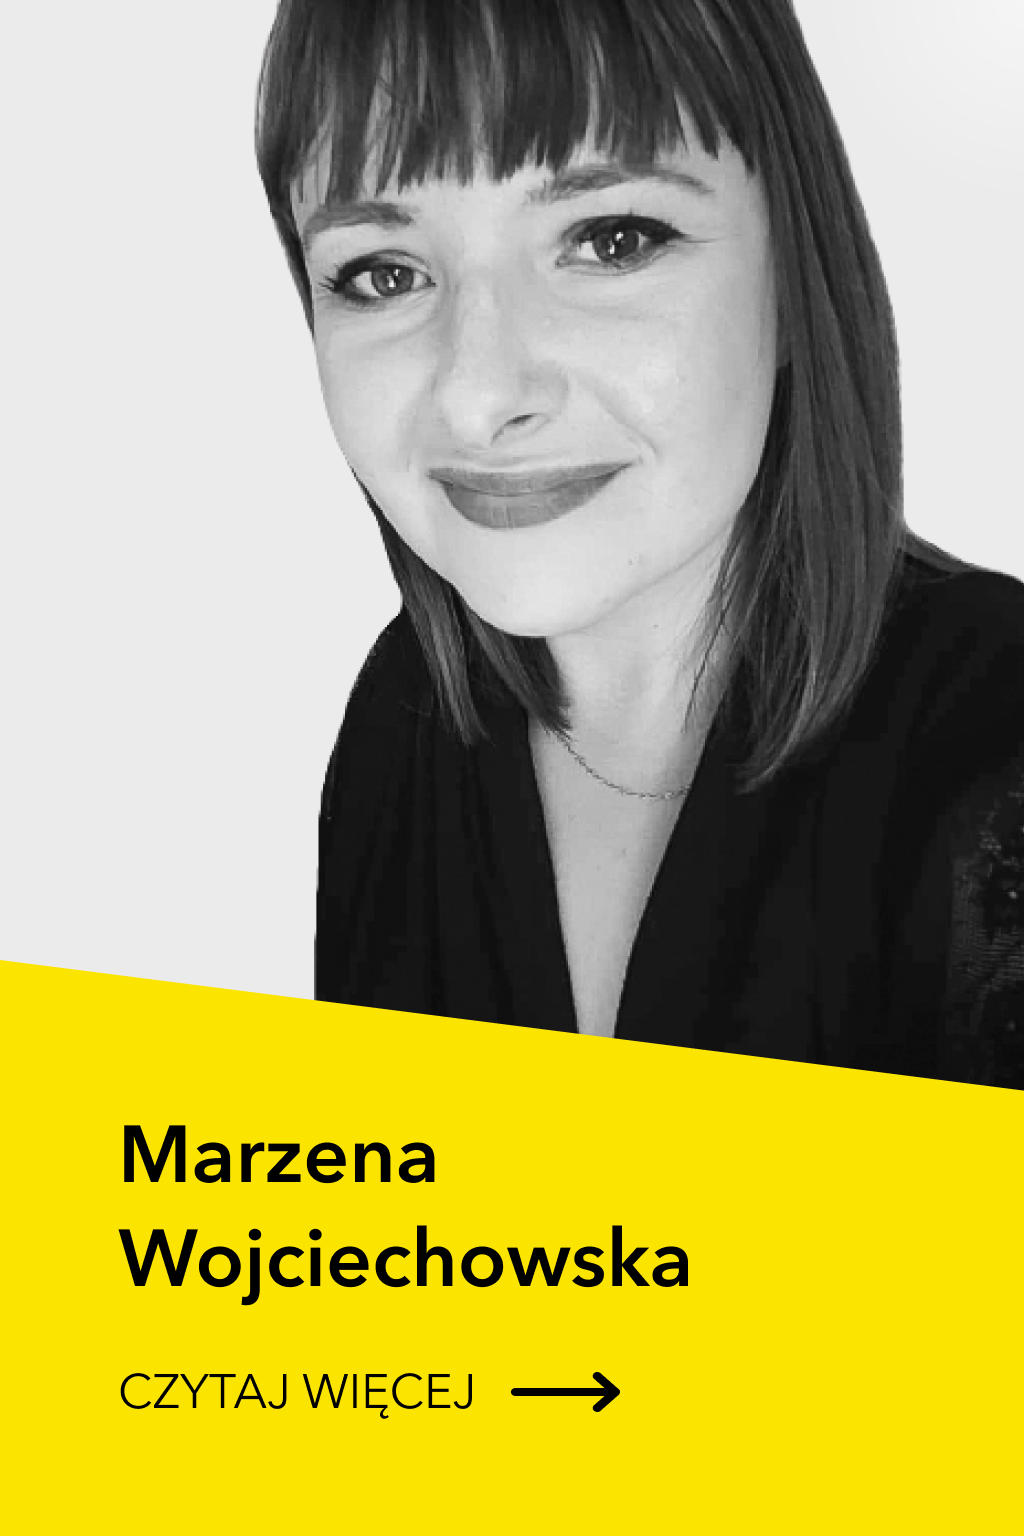 Marzena Wojciechowska